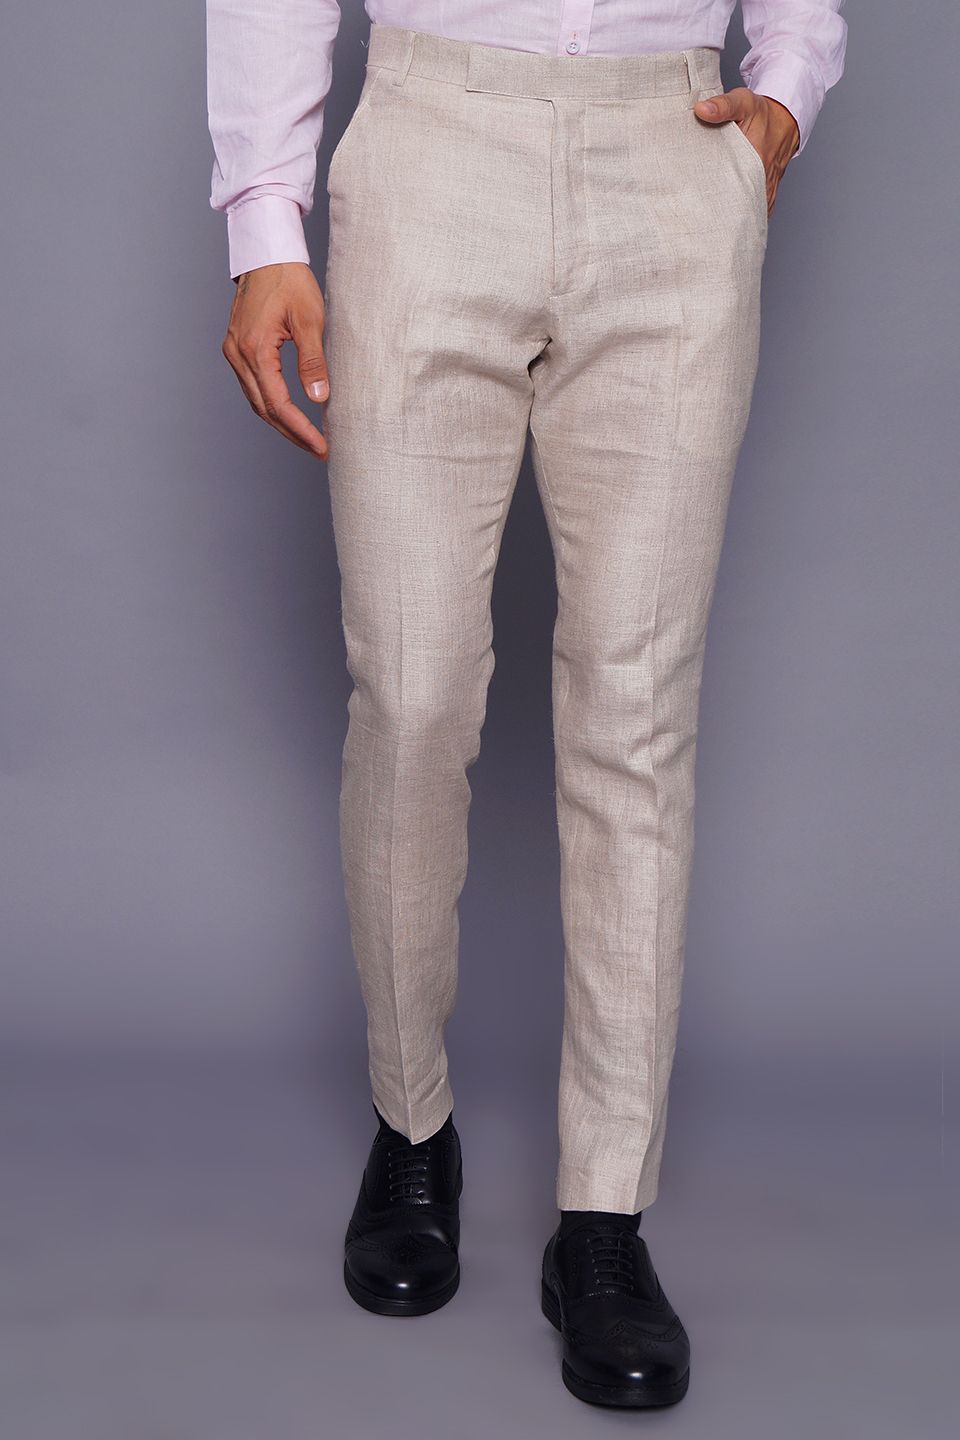 Wintage Men's Cream Regular Fit Pant 100% Linen 